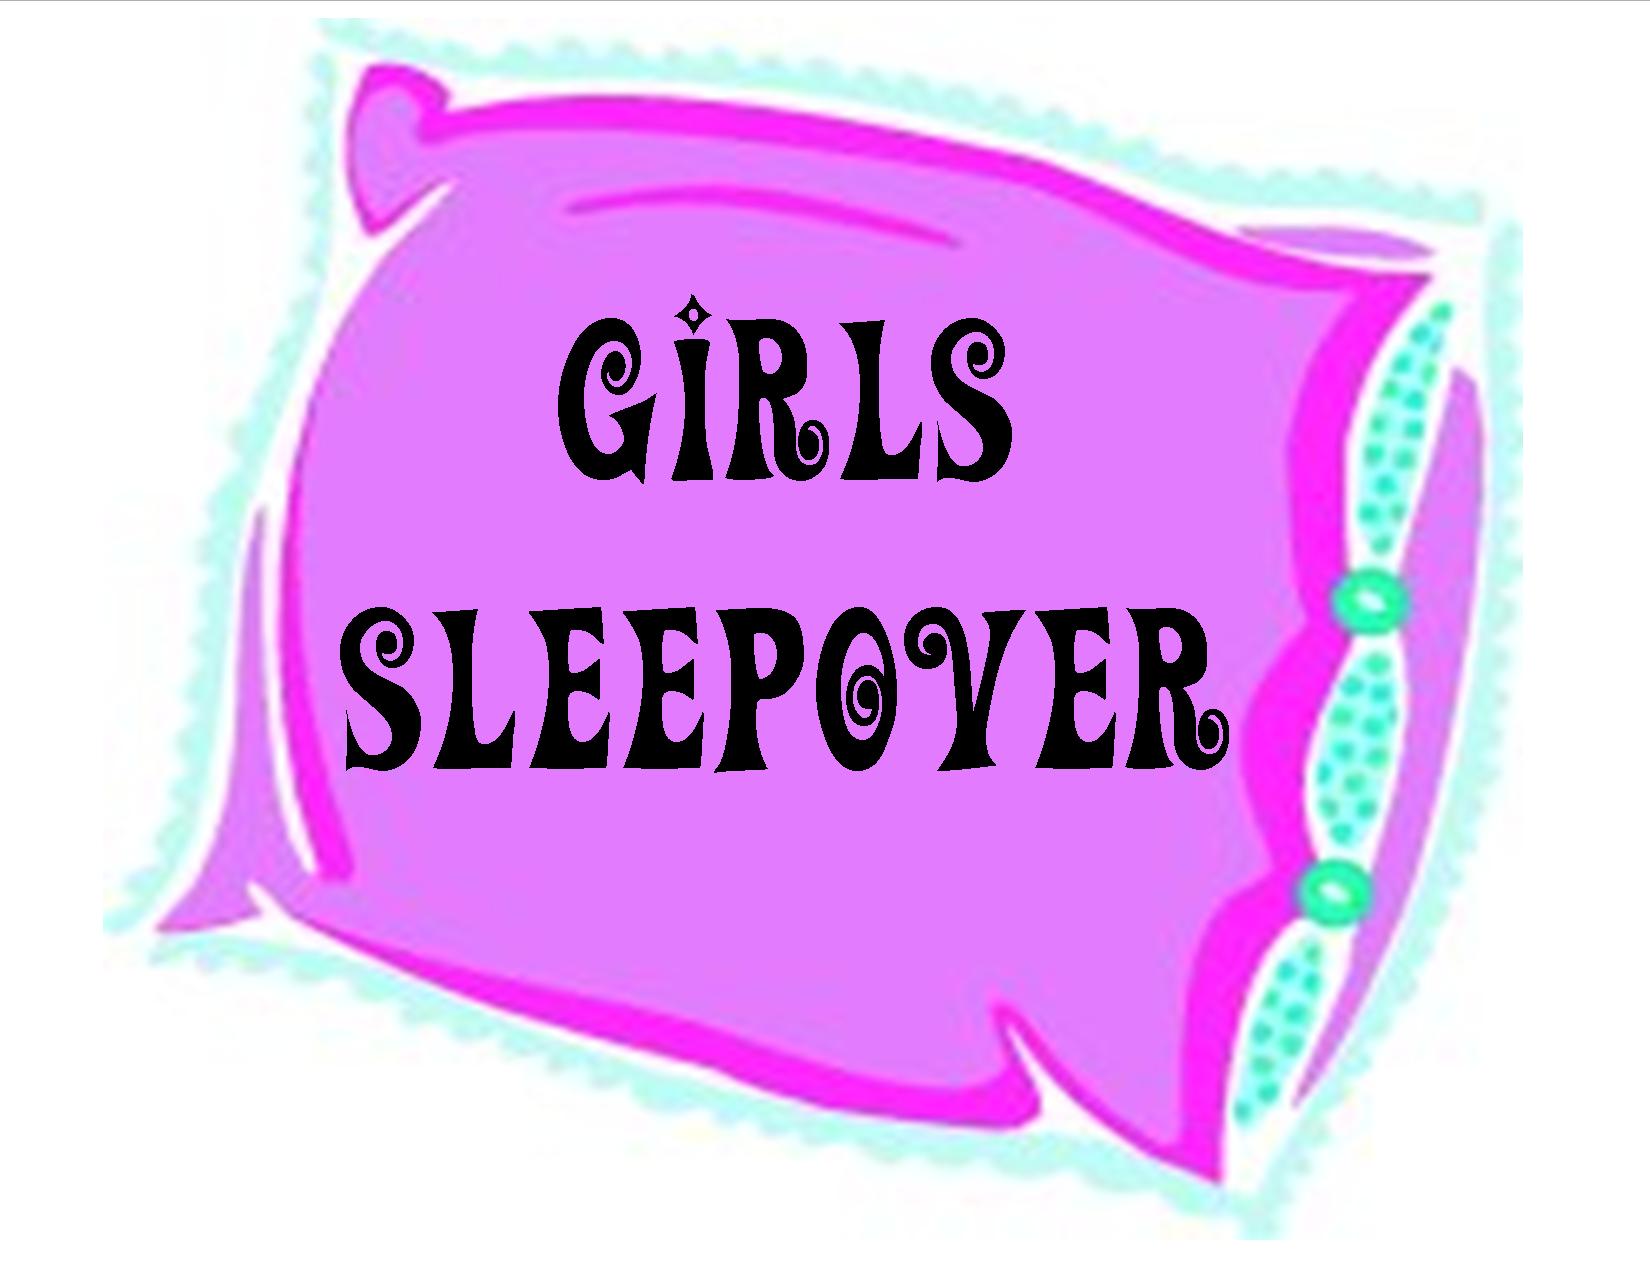 Sleep Over Girls Sleepover Graphic